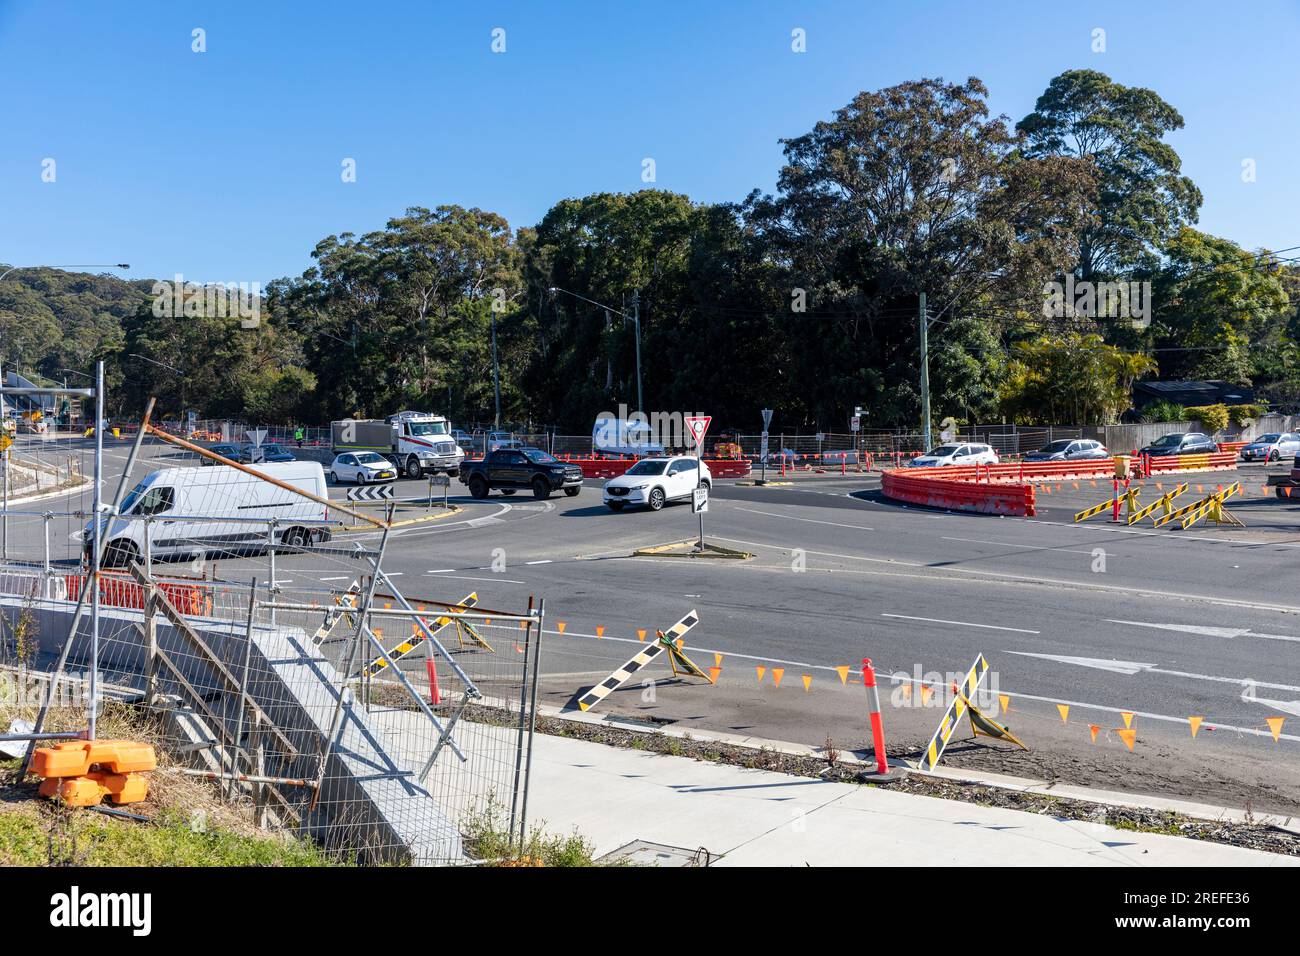 Infrastructure routière australienne, élargissement de la route et projet de duplication de Mona Vale Road sur les plages du nord de Sydney, Nouvelle-Galles du Sud, Australie Banque D'Images